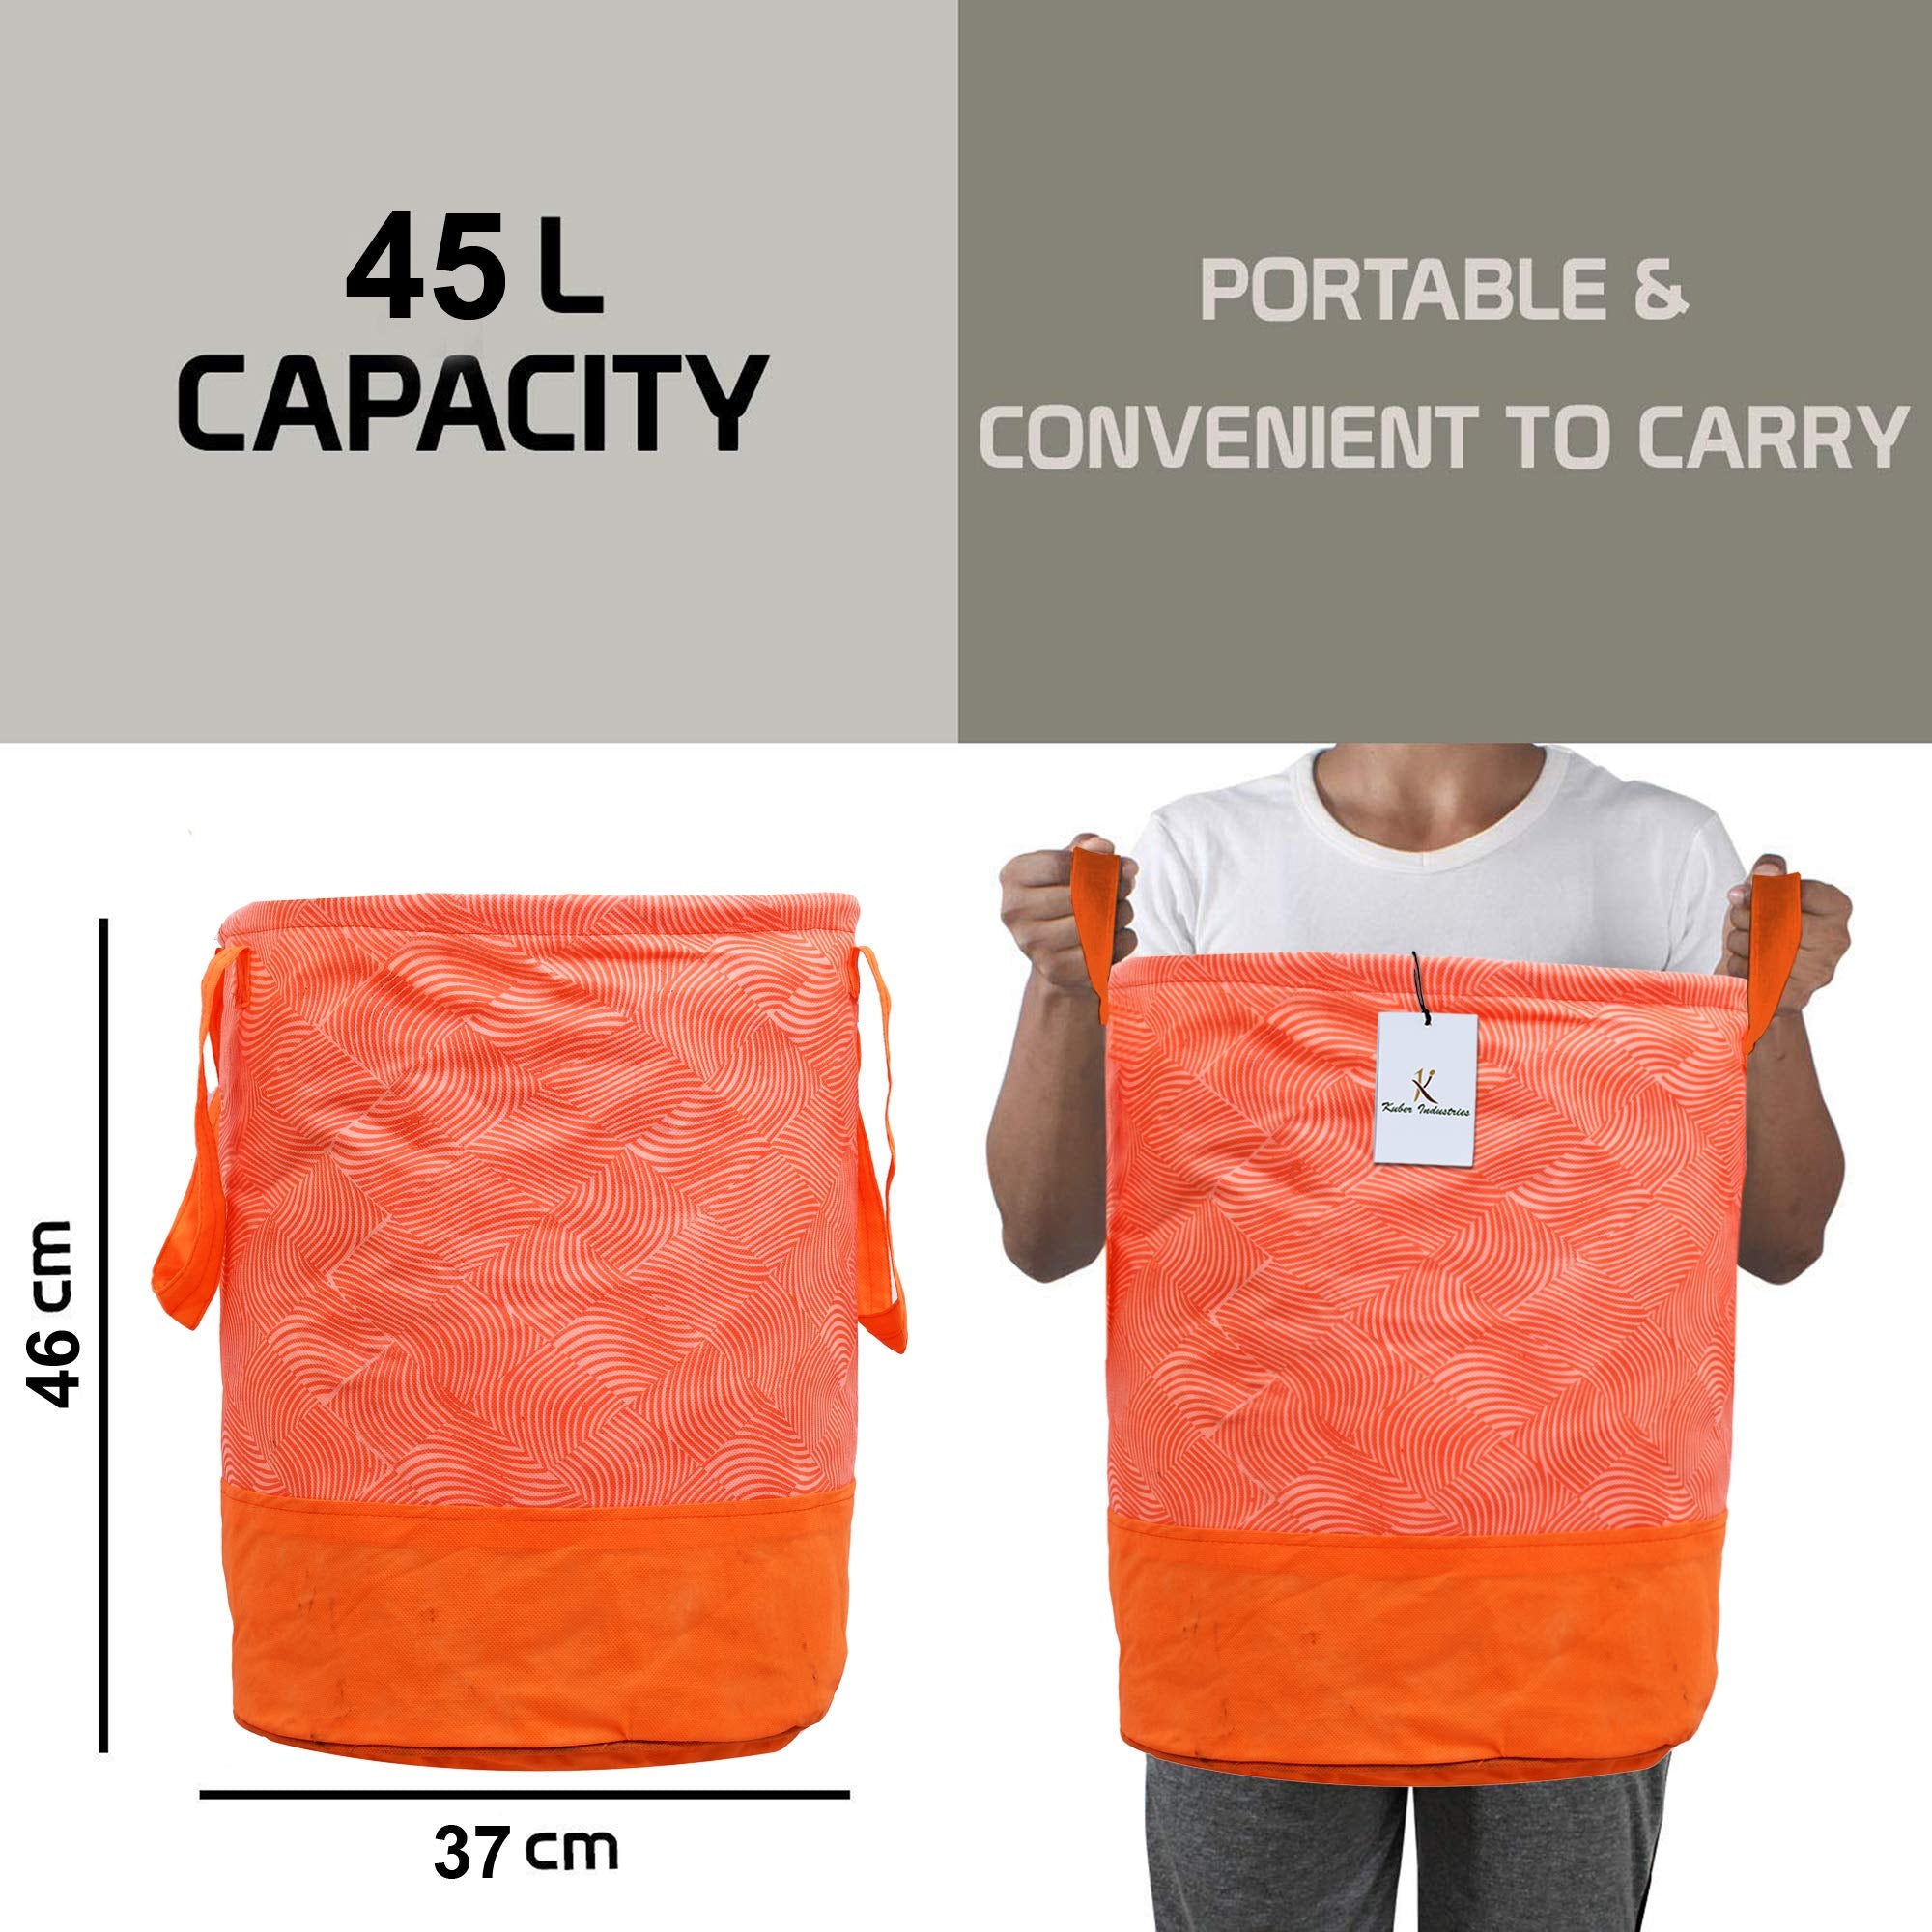 Kuber Industries Laheriya Printed Waterproof Canvas Laundry Bag|Toy Storage| Laundry Basket Organizer With Handles, 45 L (Orange) CTKTC134628, pack of 1